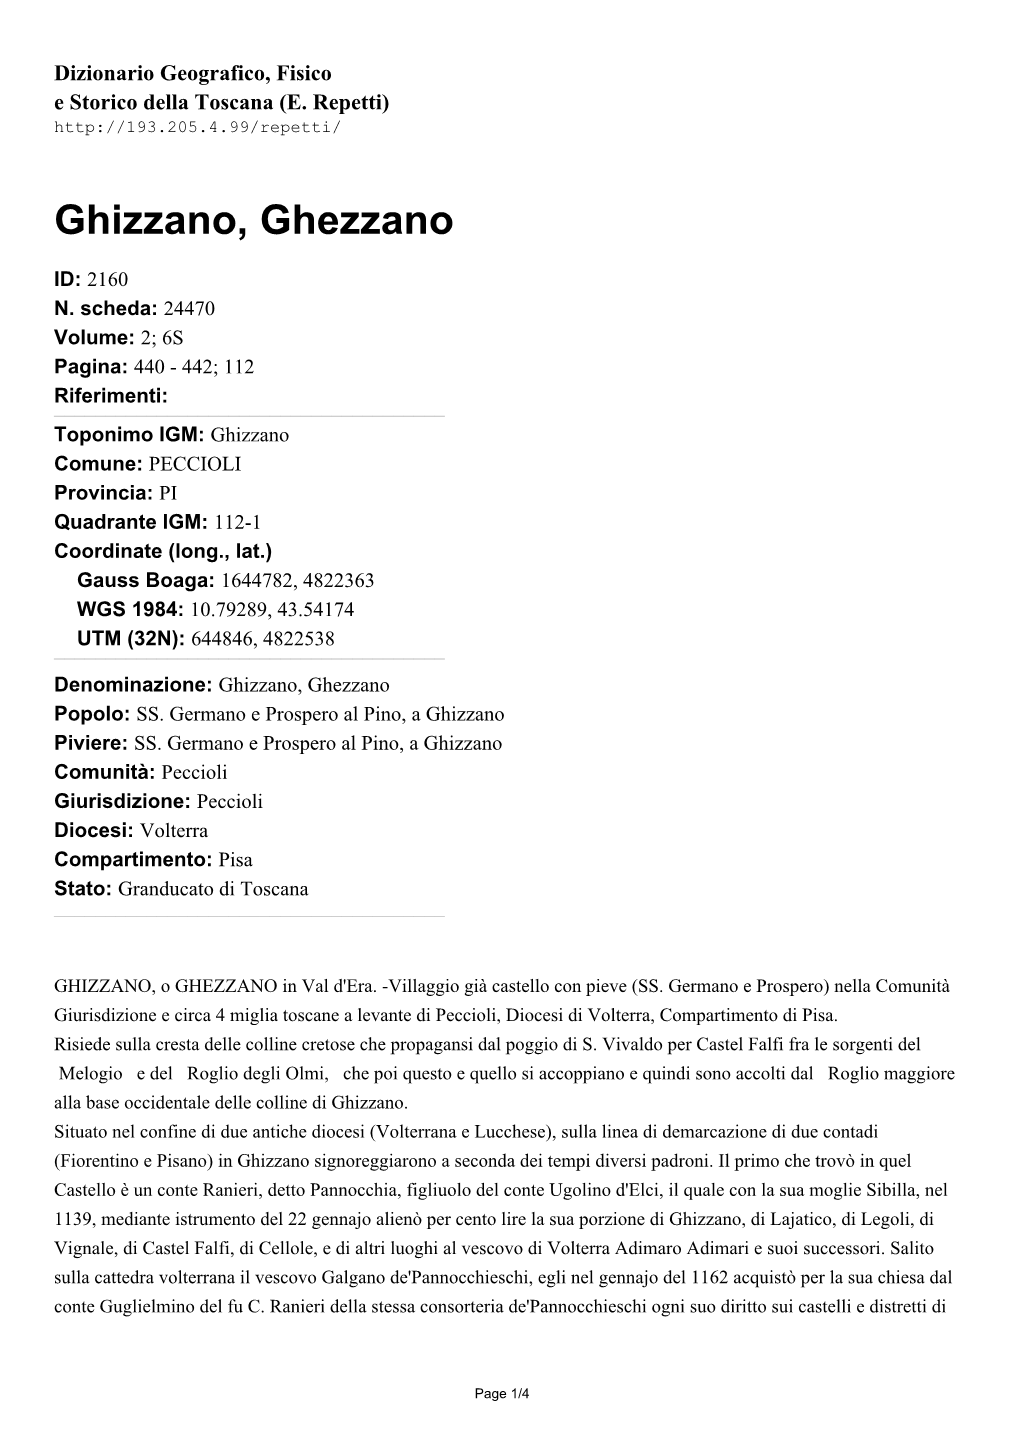 Ghizzano, Ghezzano